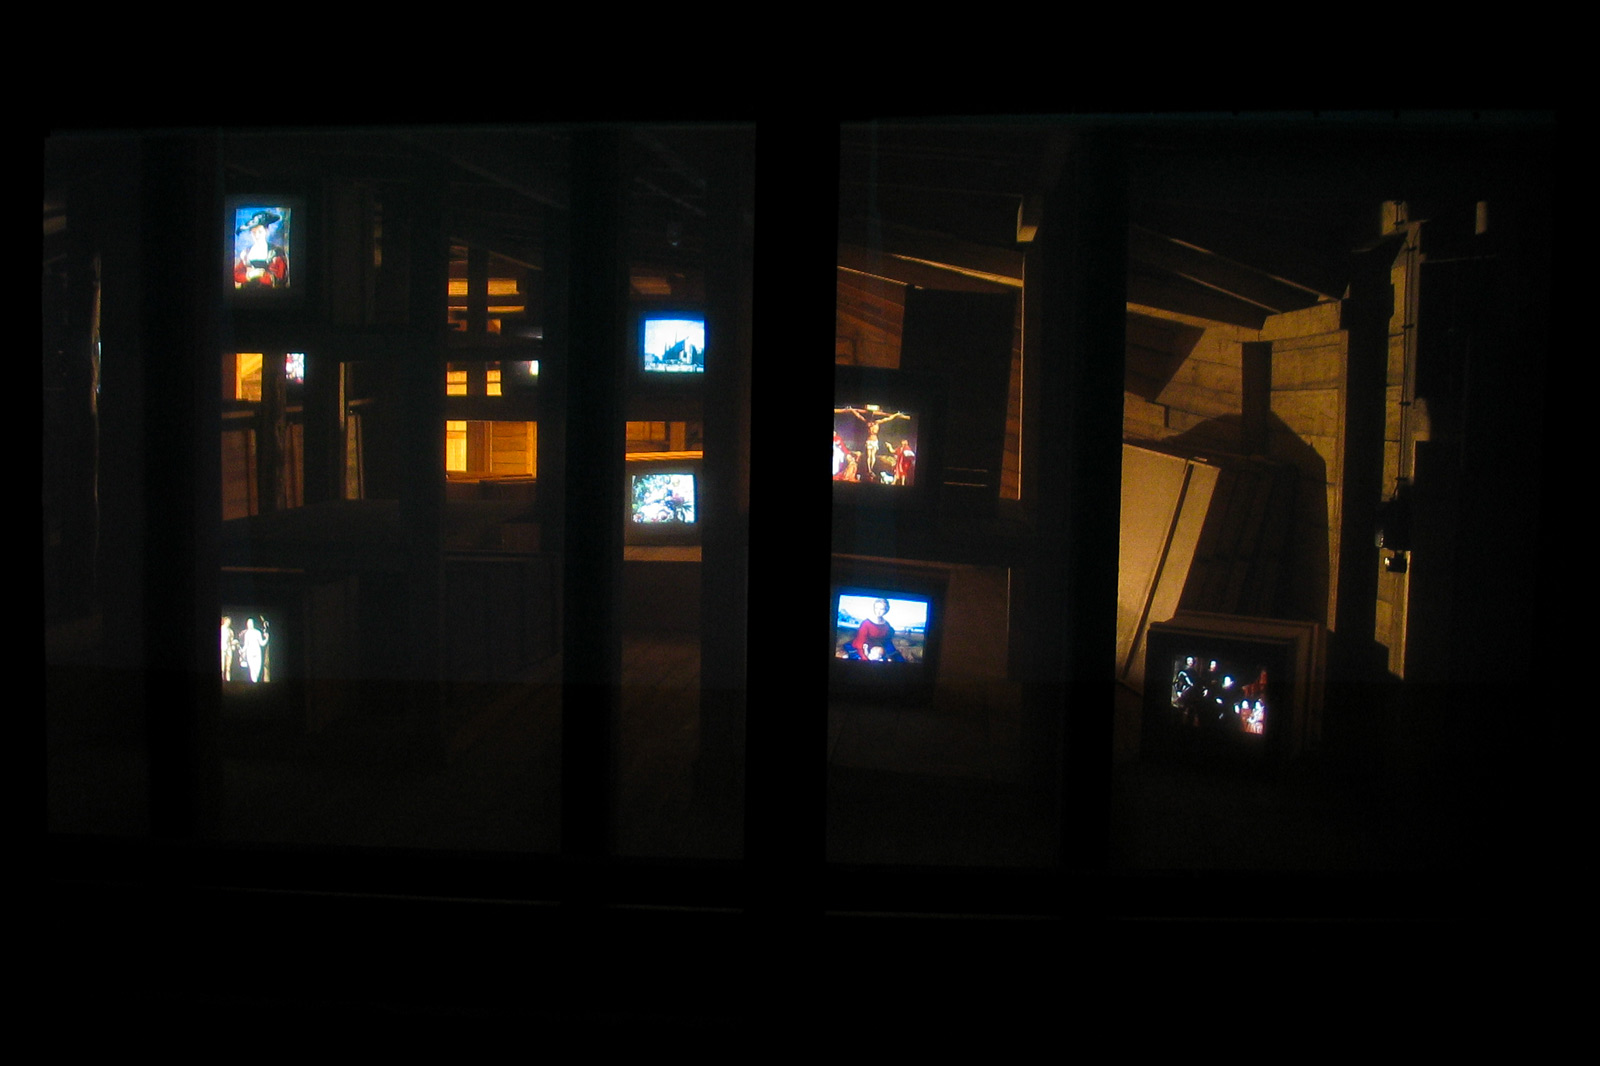 Das Referenzbild für Ausstellungsgestaltung aus der Dauerausstellung „Berg der Schätze“ zeigt eine Medieninszenierung zum Thema Kunstraub.